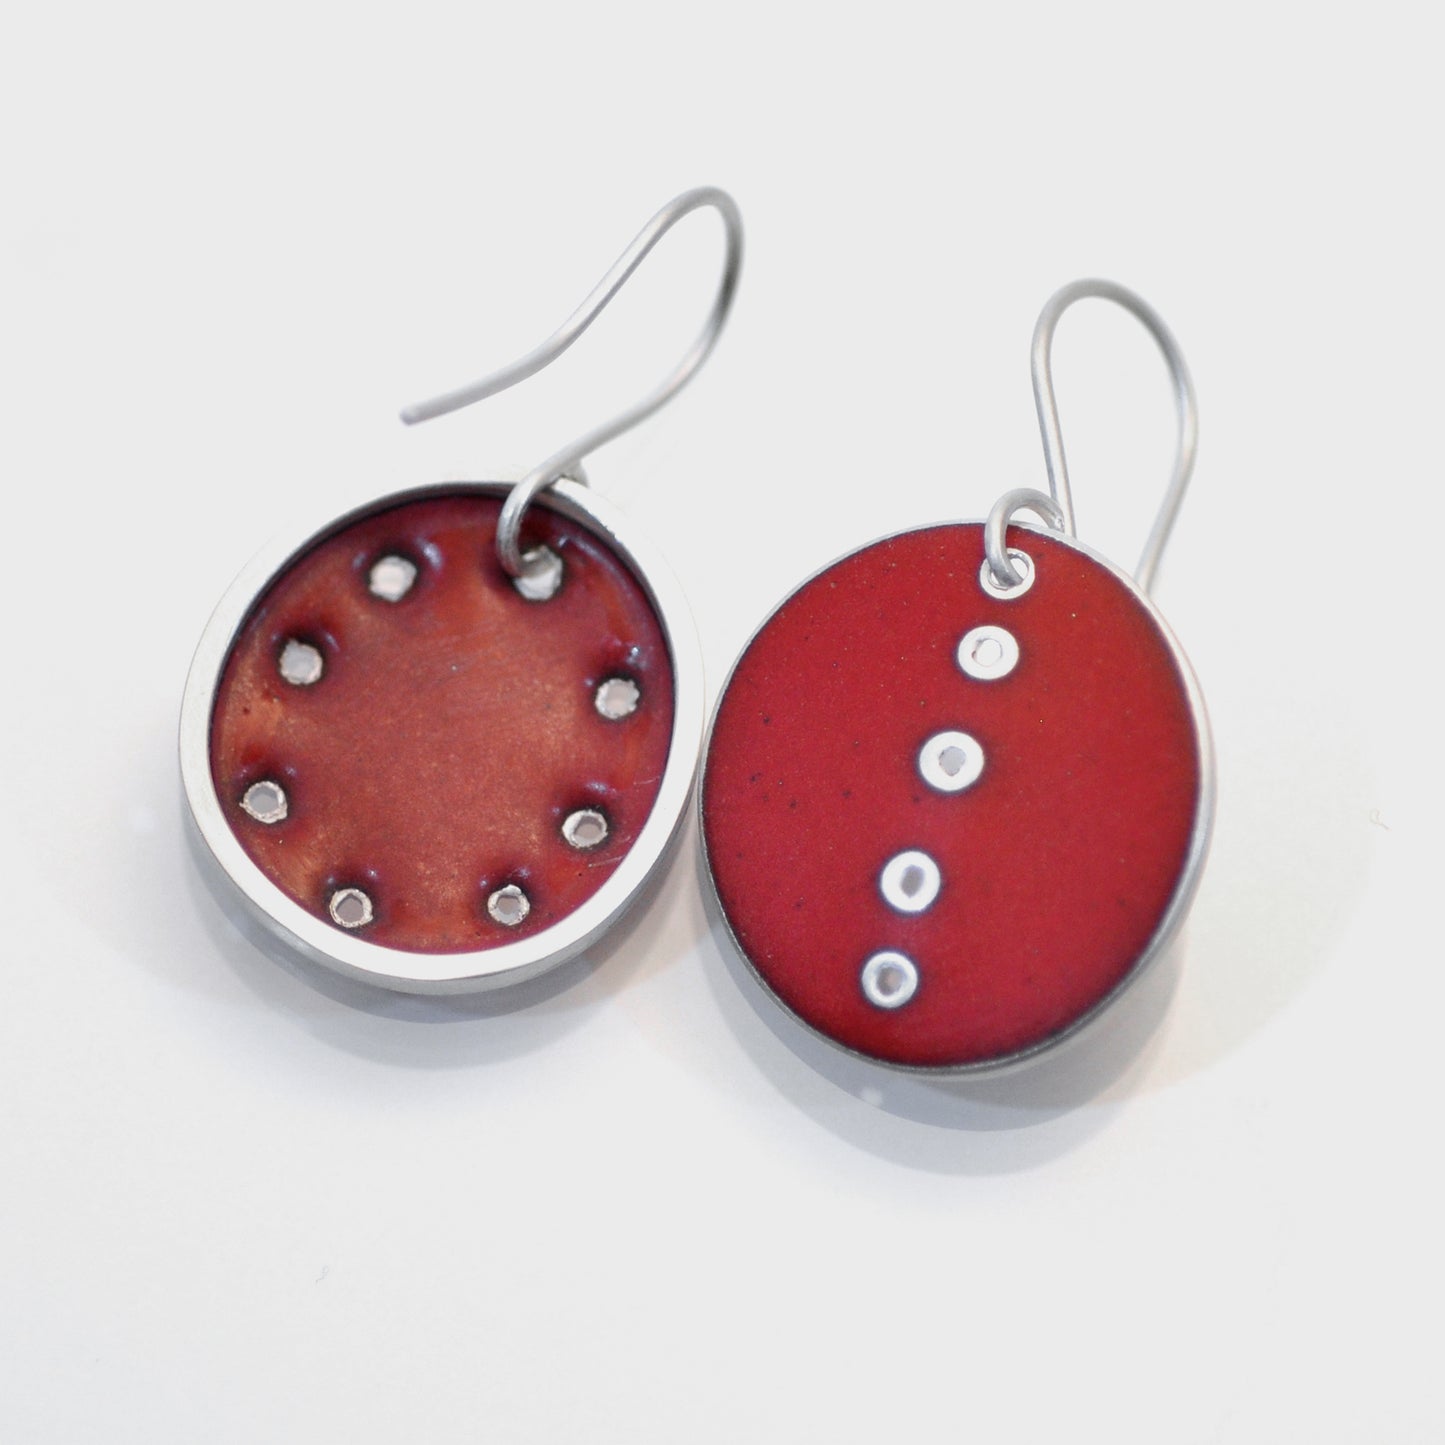 Red odd pair of earrings